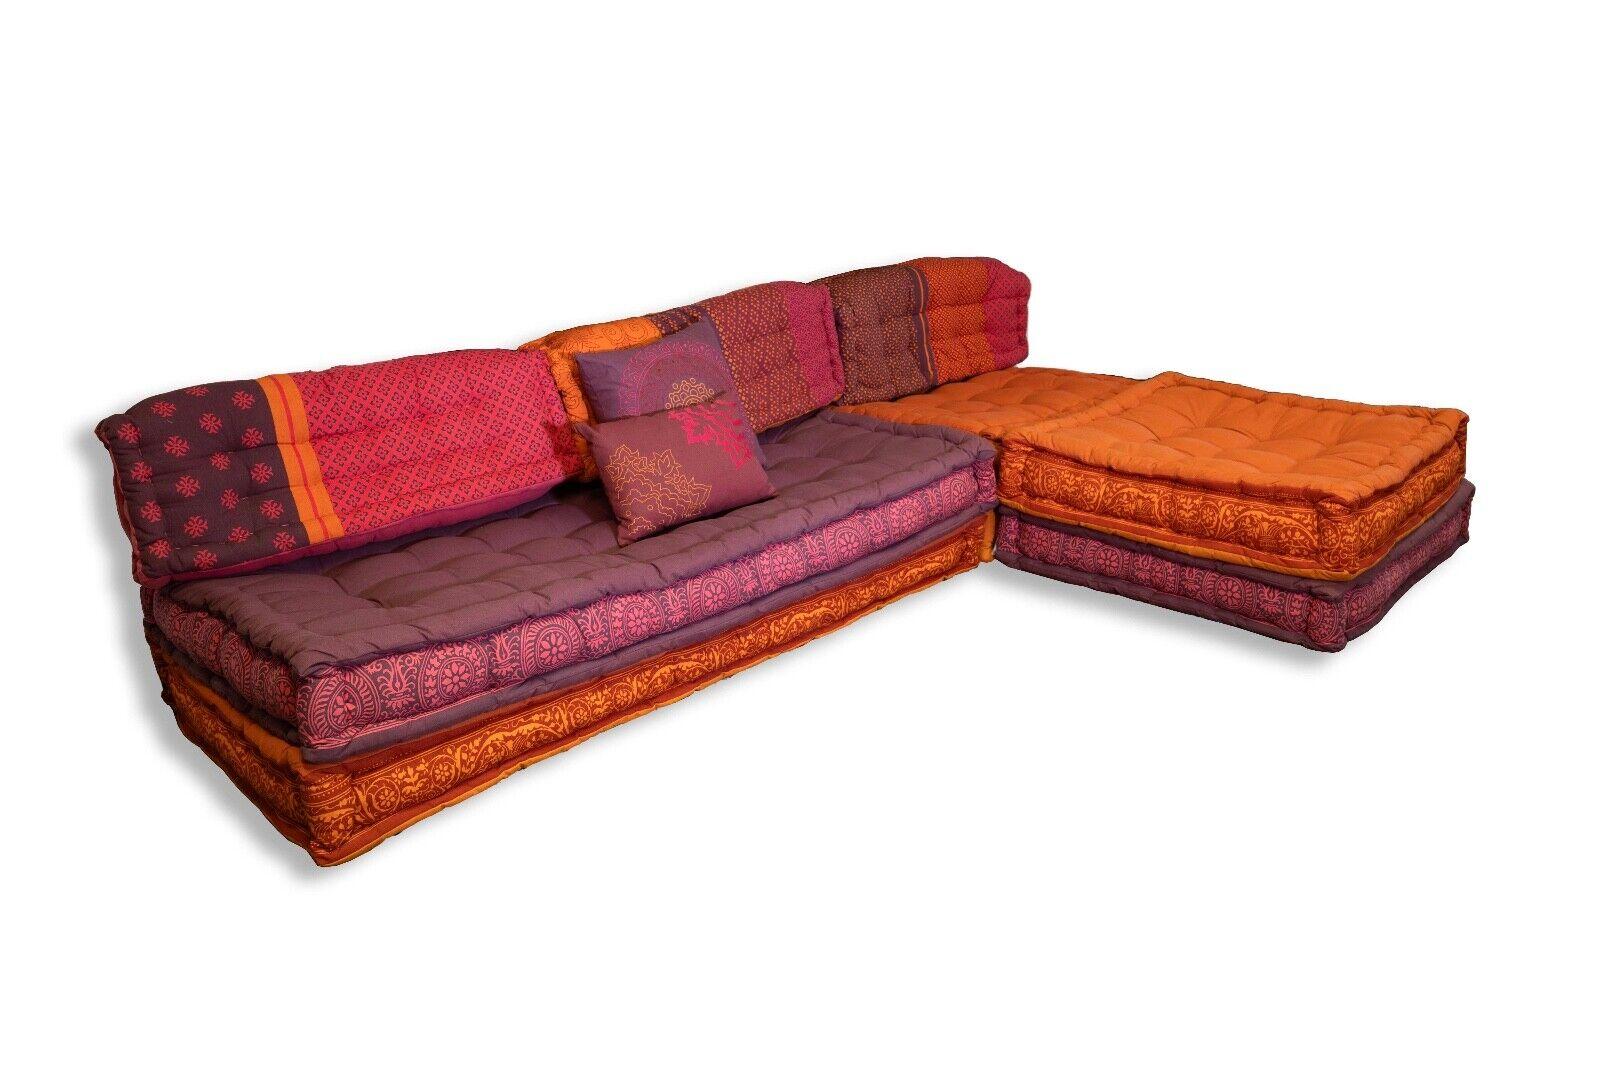 Le canapé sectionnel moderne Purple & Orange s'inspire de l'emblématique style modulaire Mah Jong de Roche Bobois, offrant une touche fraîche et contemporaine à un design classique. Ce superbe canapé sectionnel combine des teintes violettes et